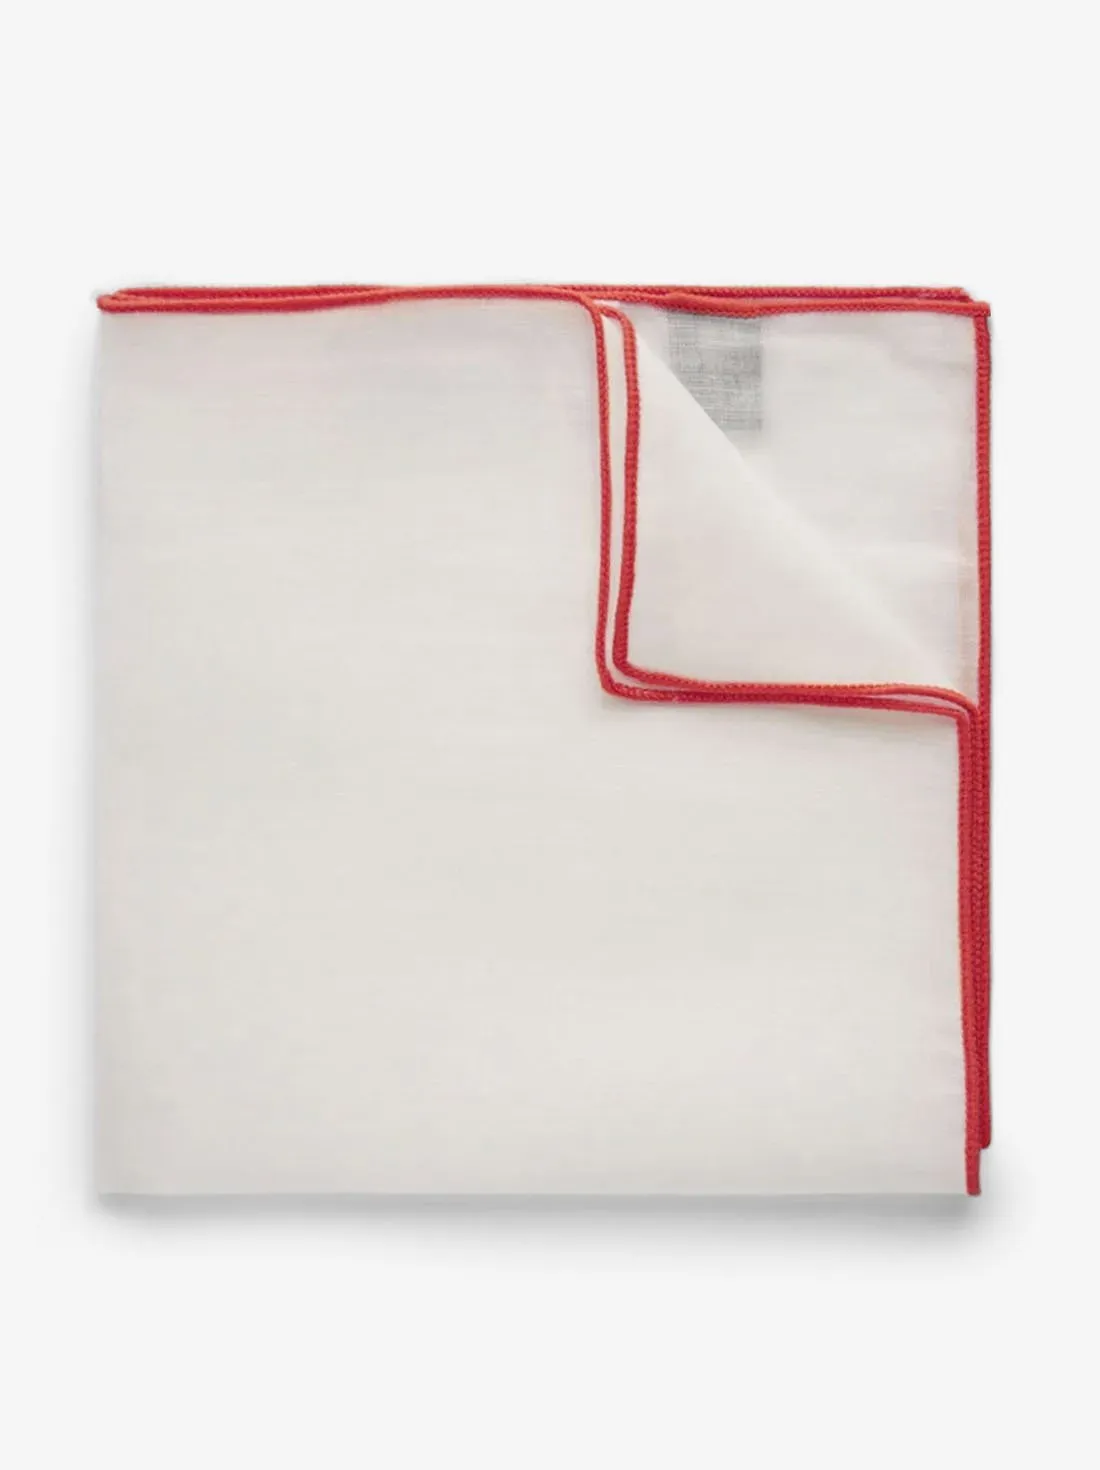 Red & White Pocket Square Linen